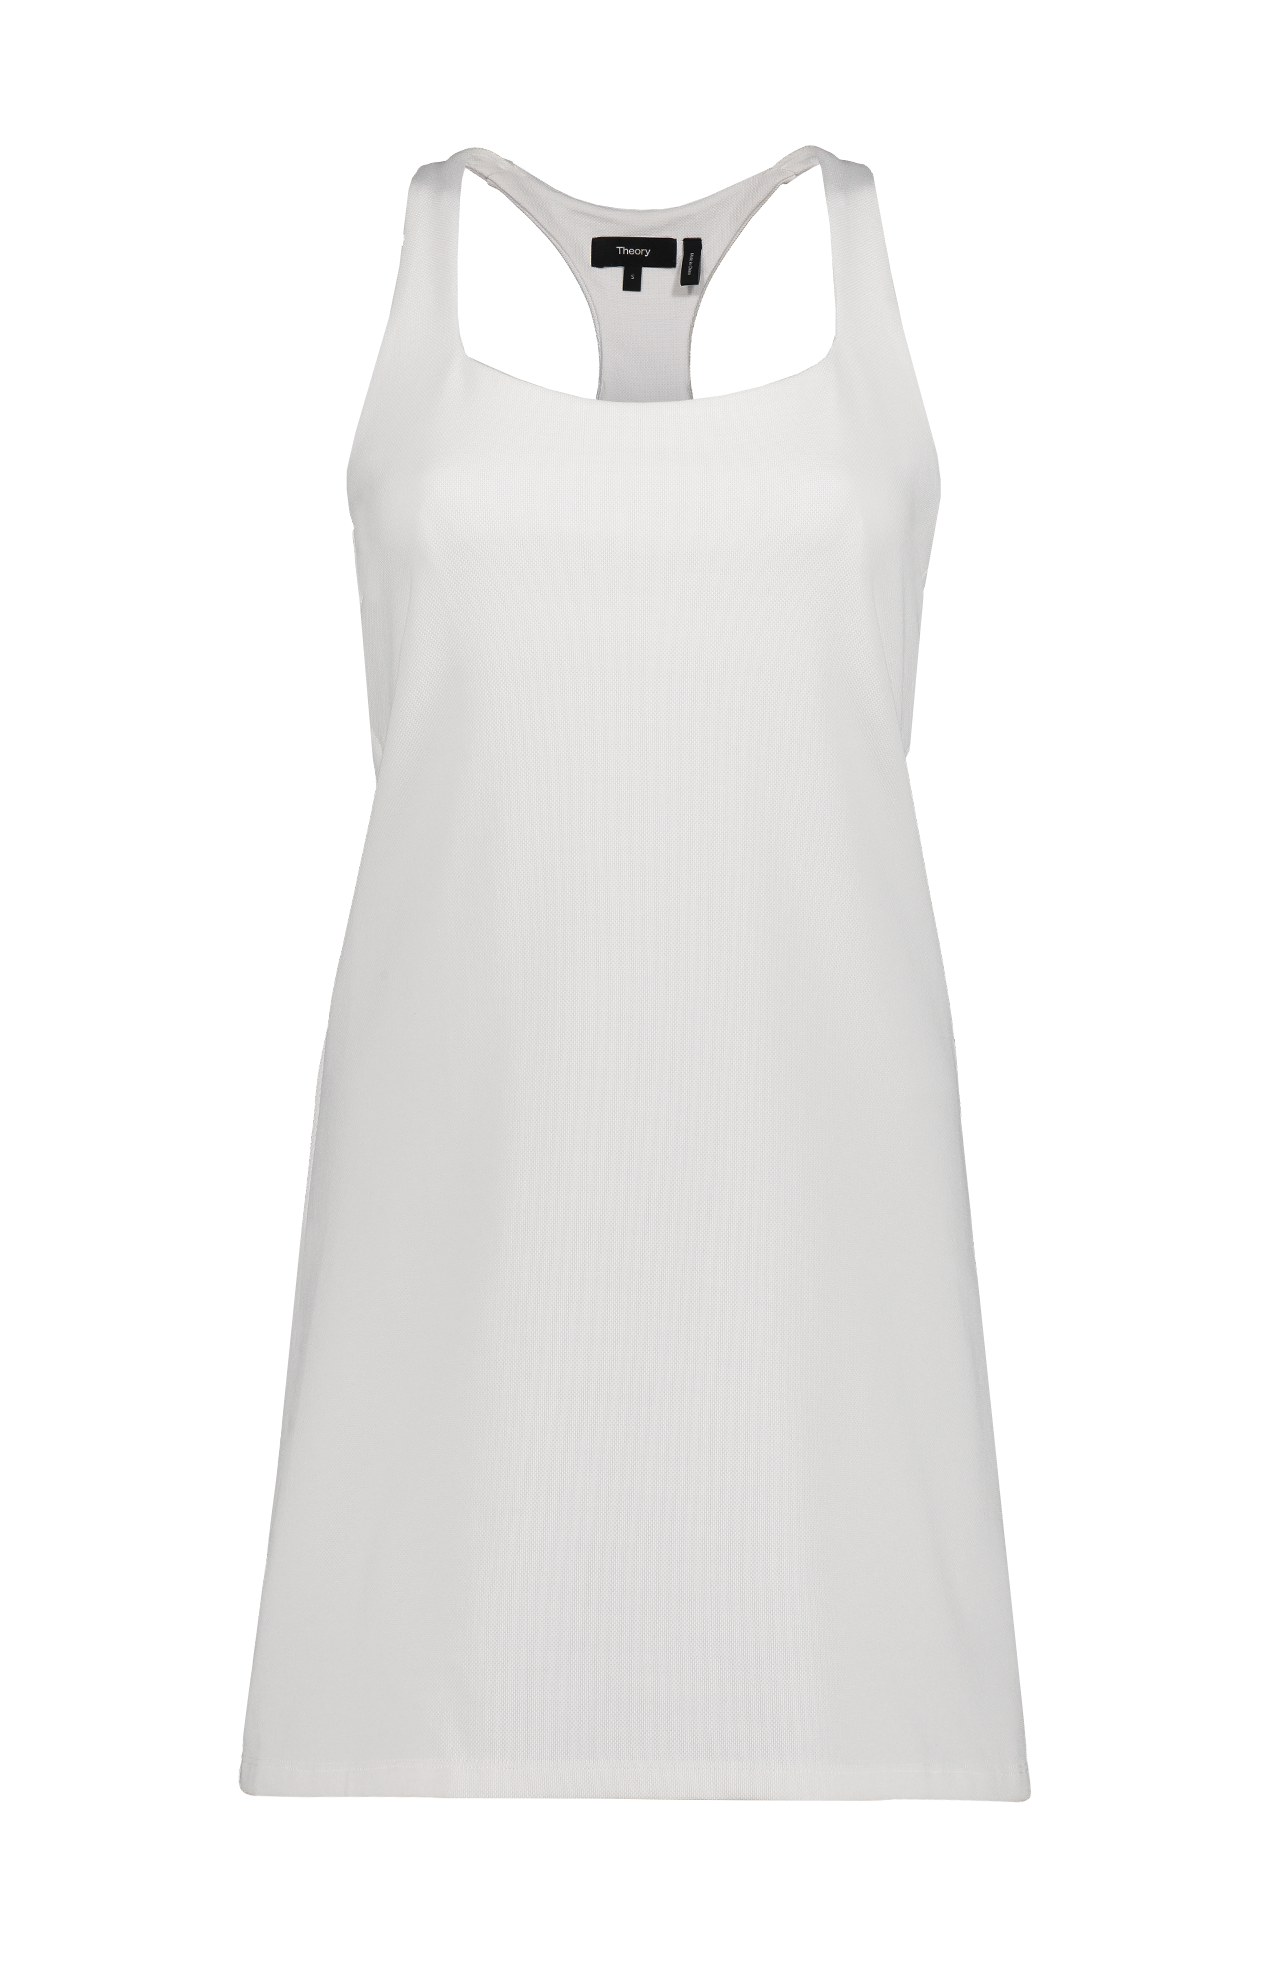 Mini Tennis Dress (7145028354163)